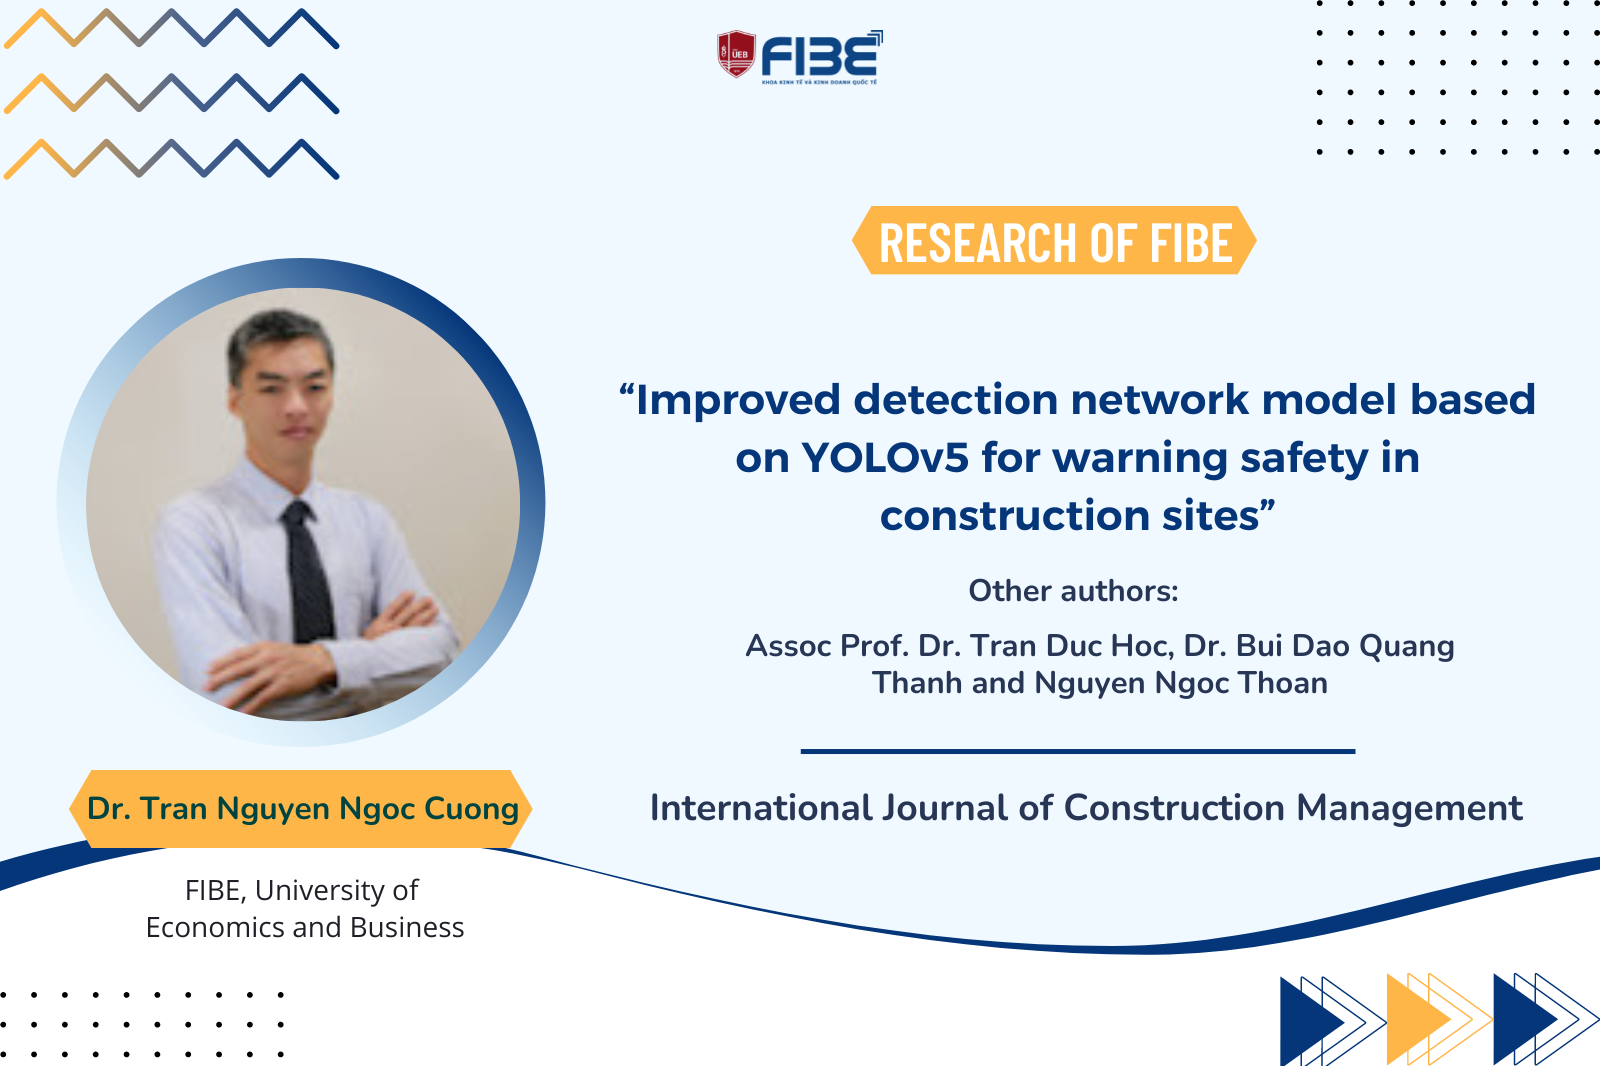 Tìm hiểu nghiên cứu về "Improved detection network model based on YOLOv5 for warning safety in construction sites" của TS. Trần Nguyễn Ngọc Cương